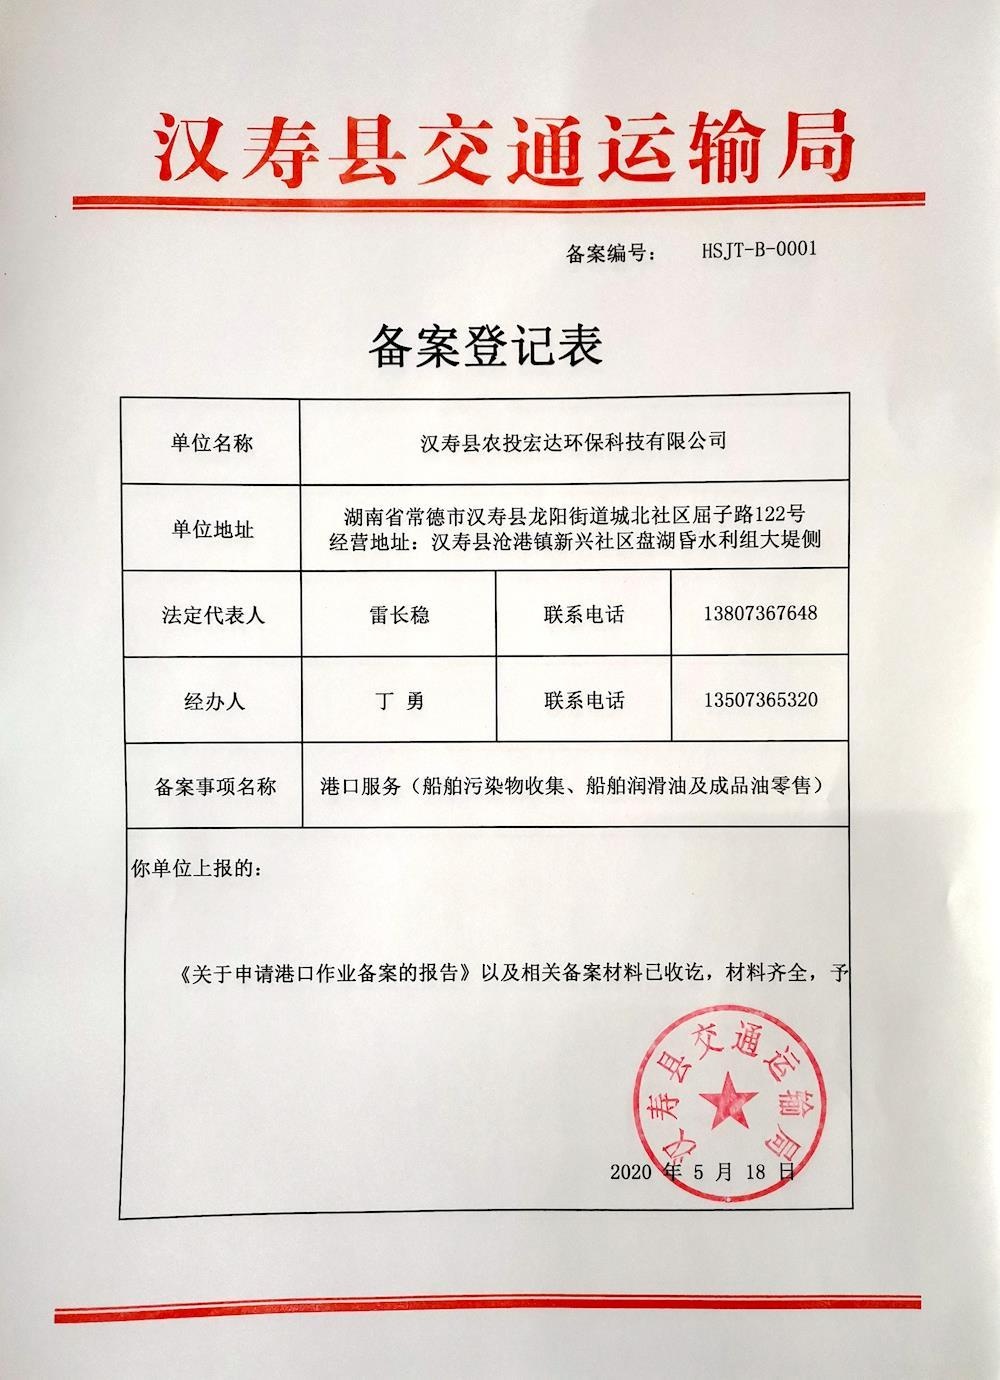 汉寿县农投宏达环保科技有限公司备案登记表